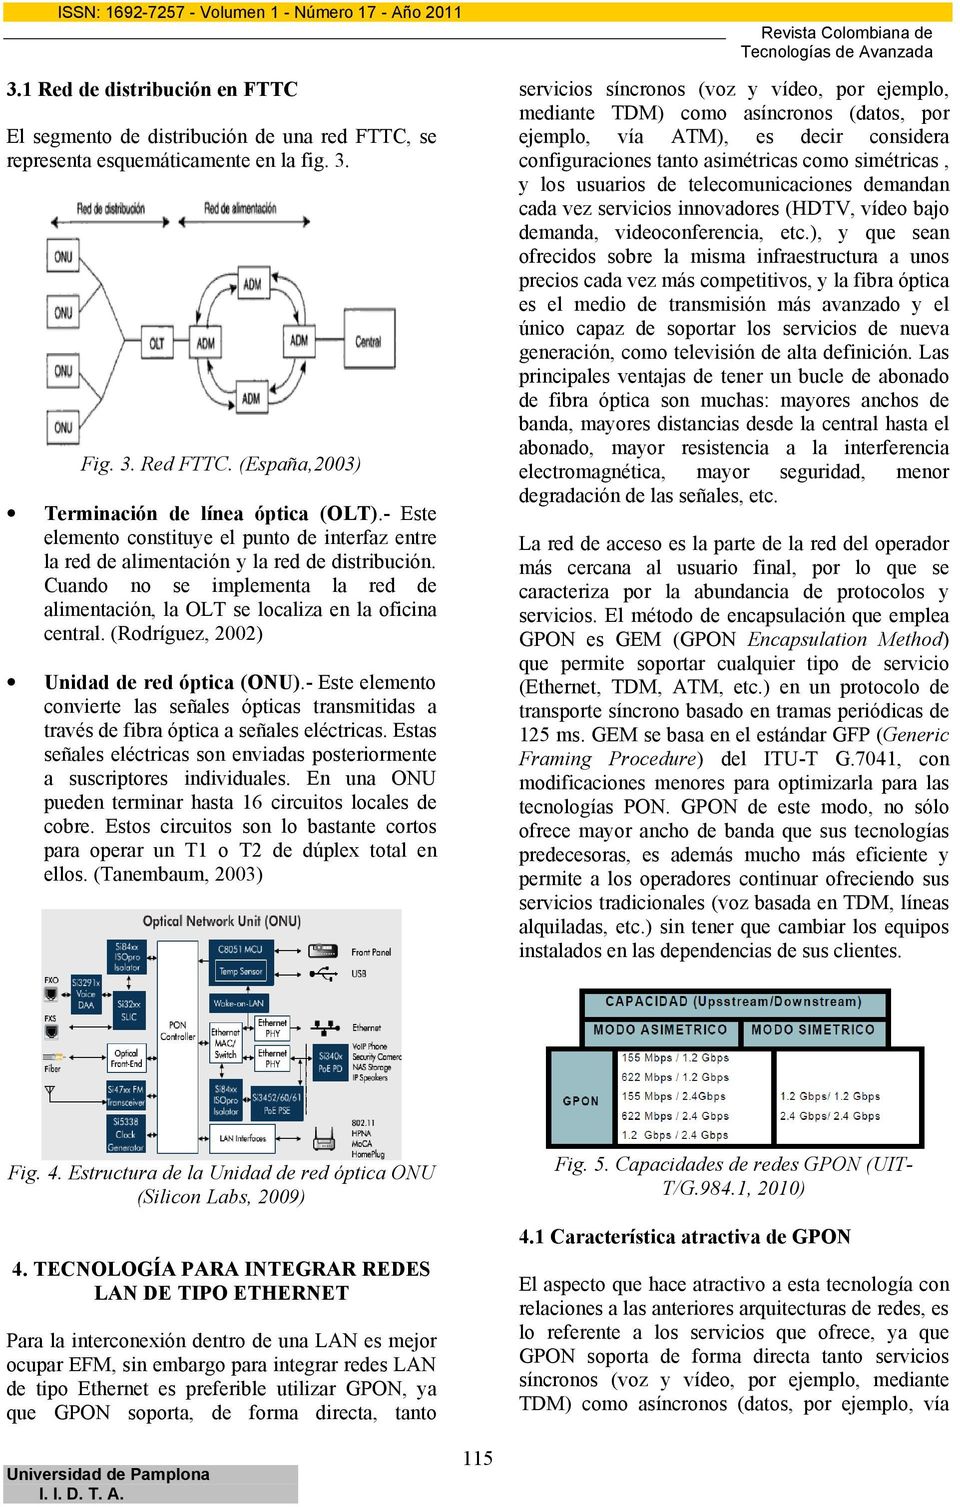 (Rodríguez, 2002) Unidad de red óptica (ONU).- Este elemento convierte las señales ópticas transmitidas a través de fibra óptica a señales eléctricas.